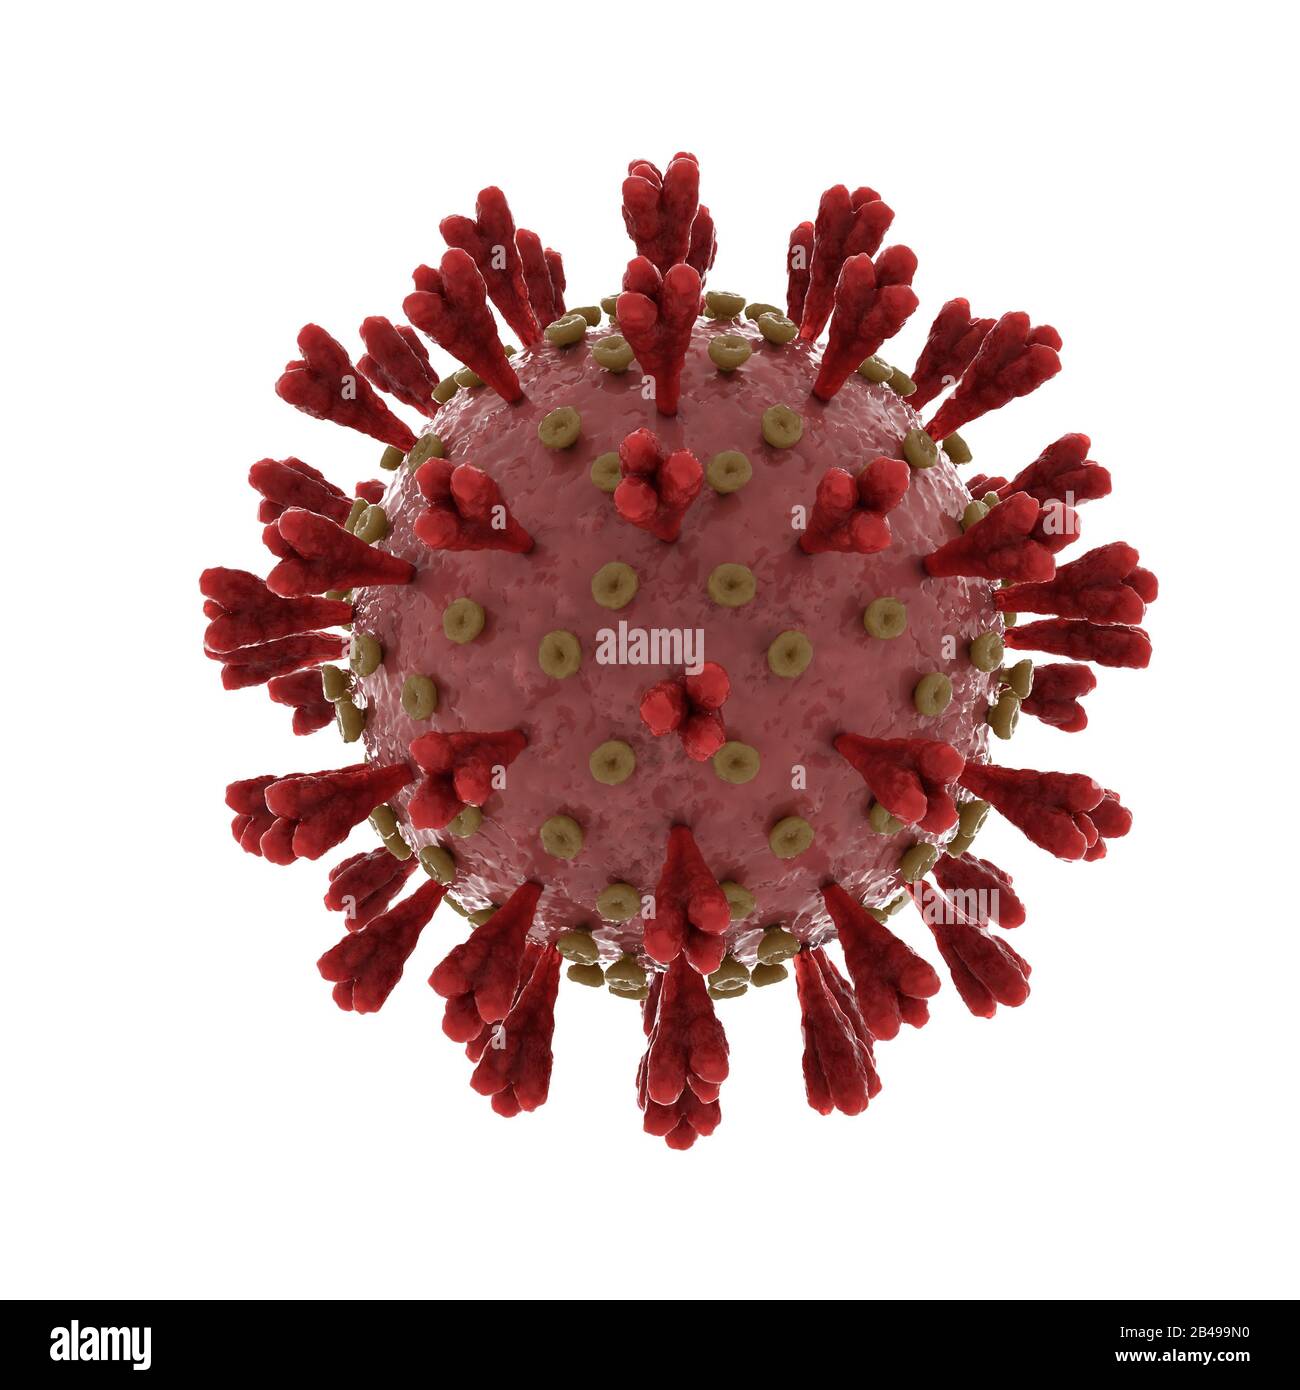 Sindrome respiratoria acuta grave coronavirus 2 che provoca covid 19 su bianco Foto Stock